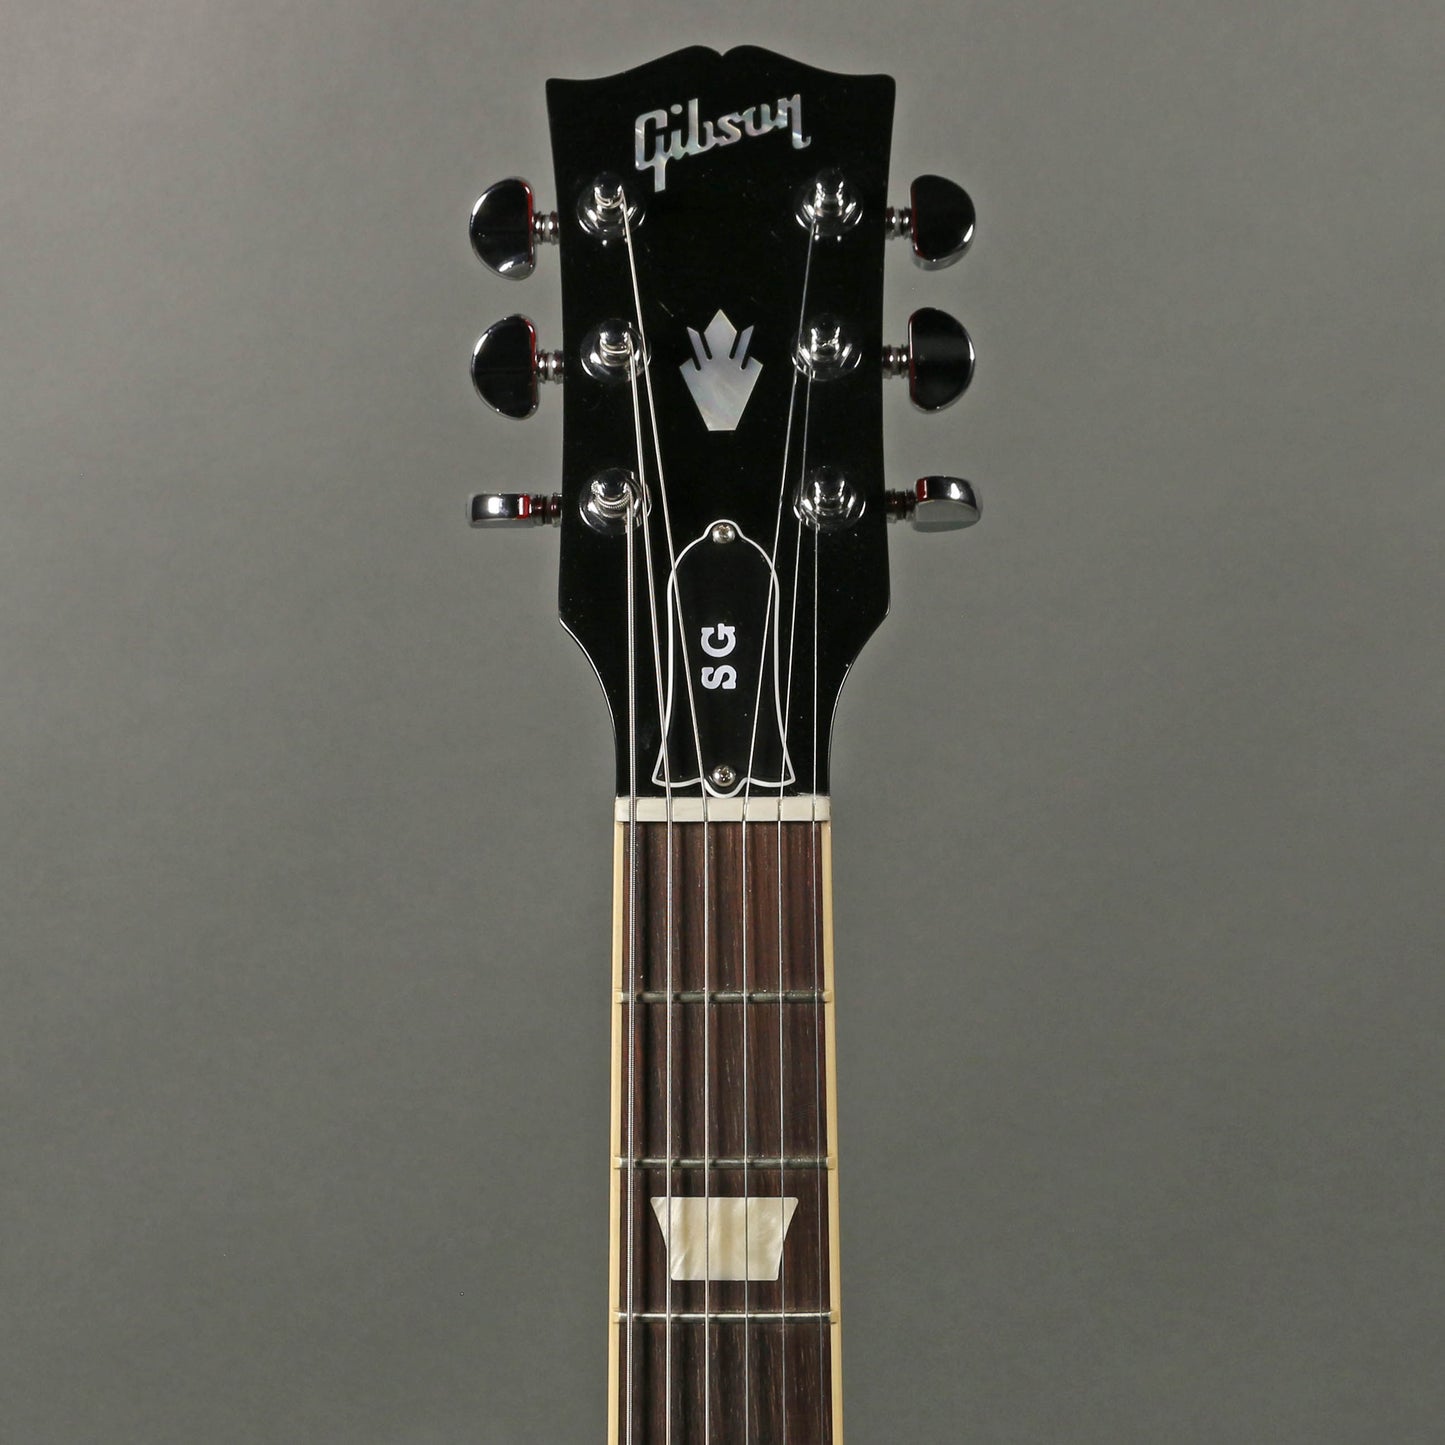 2021 Gibson SG Standard